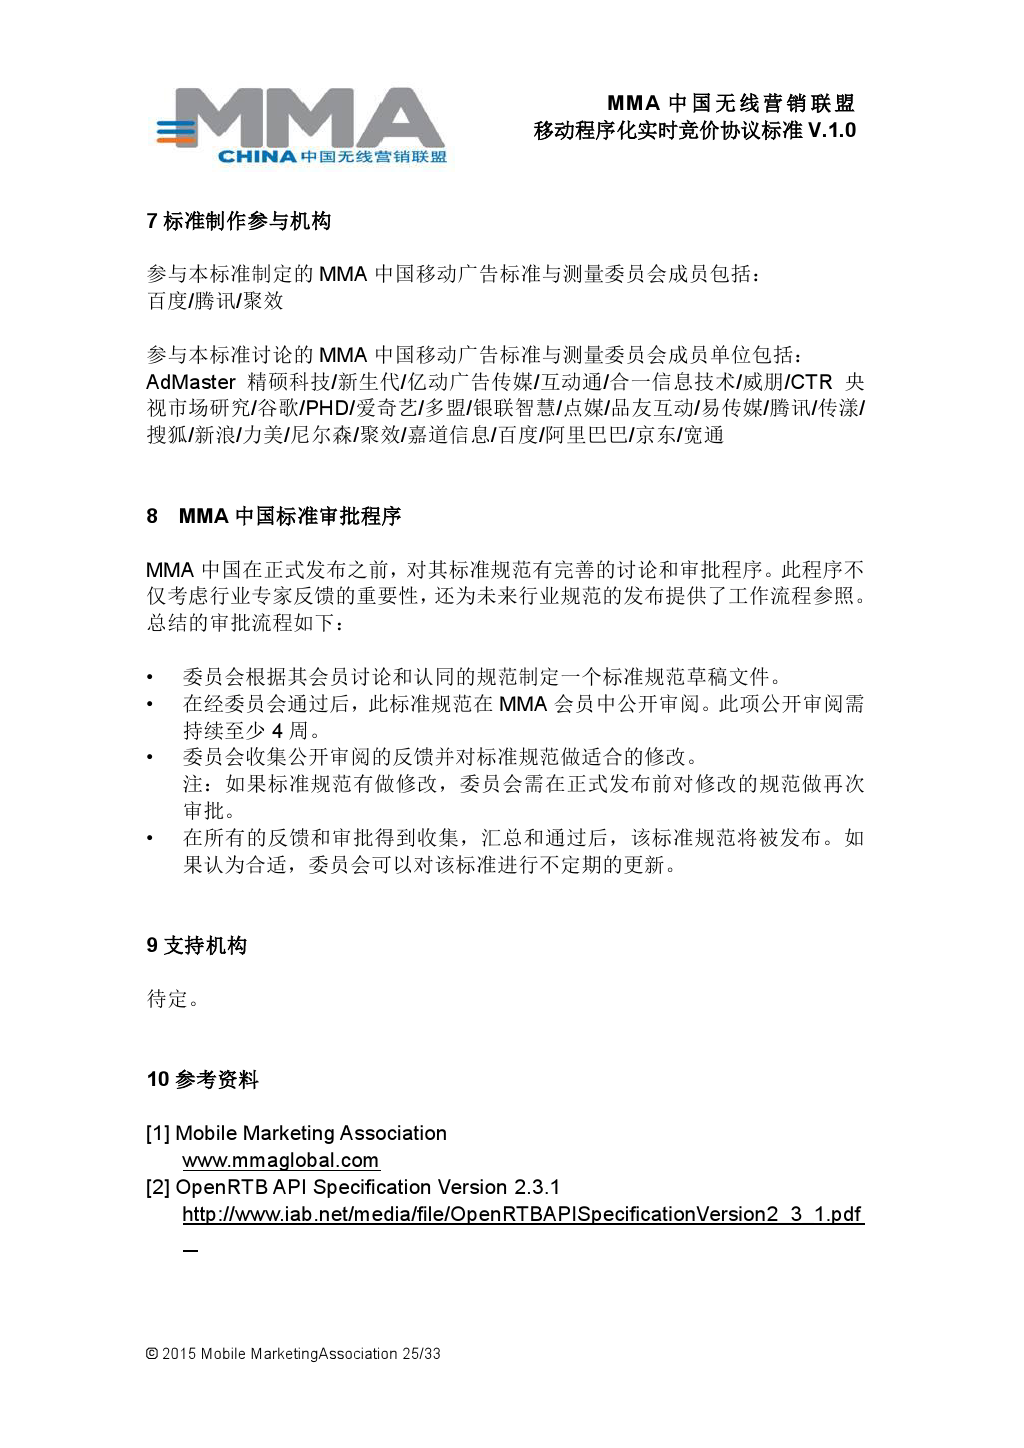 MMA中国无线营销联盟移动程序化实时竞价协议标准V.1.0_000026